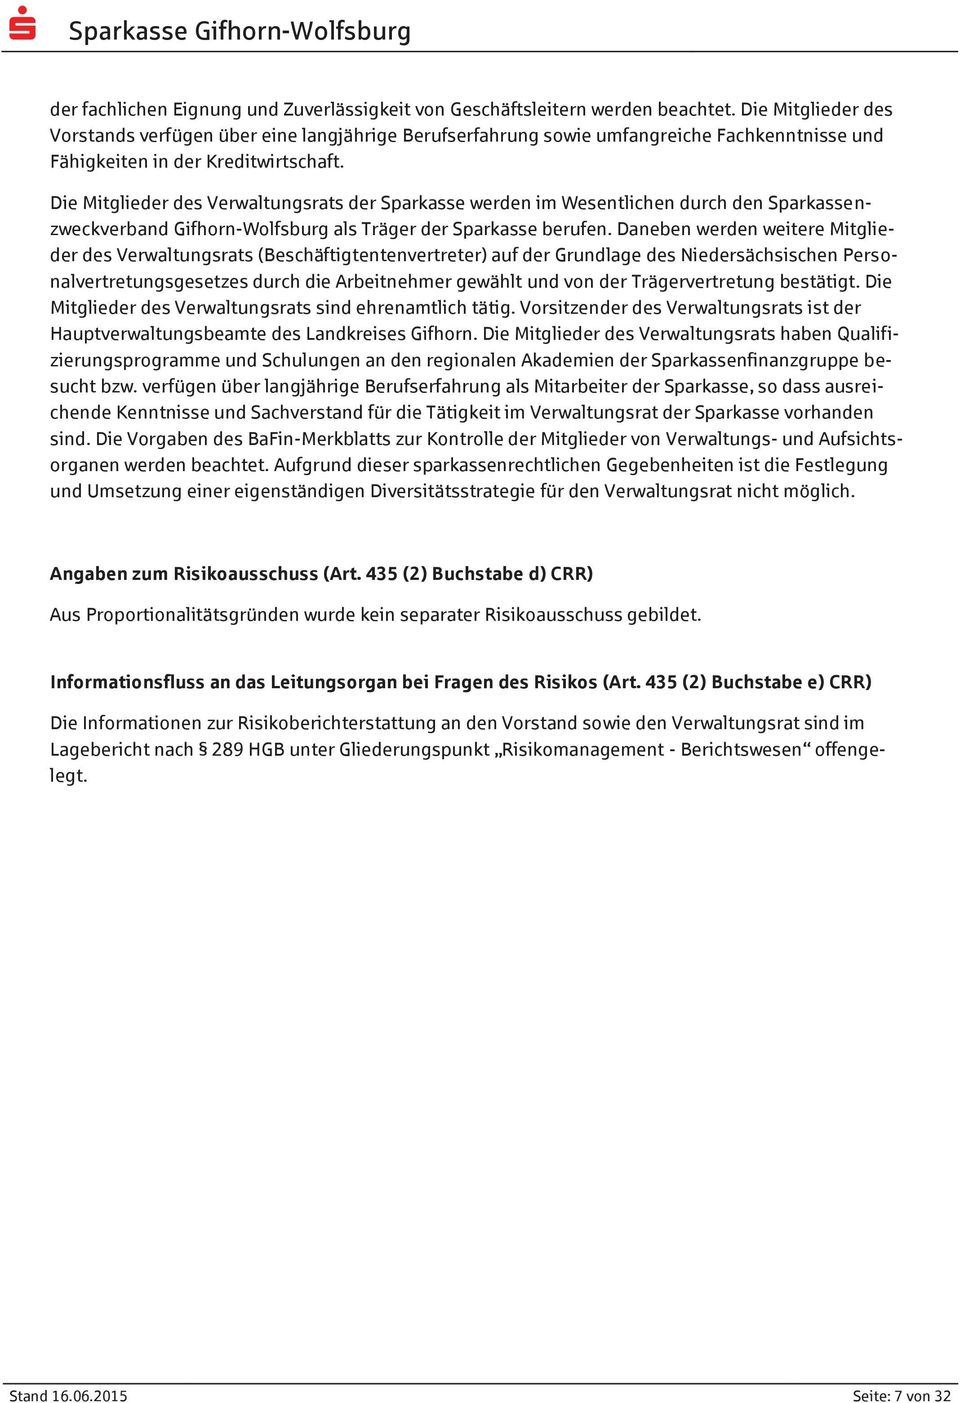 Die Mitglieder des Verwaltungsrats der Sparkasse werden im Wesentlichen durch den Sparkassenzweckverband Gifhorn-Wolfsburg als Träger der Sparkasse berufen.